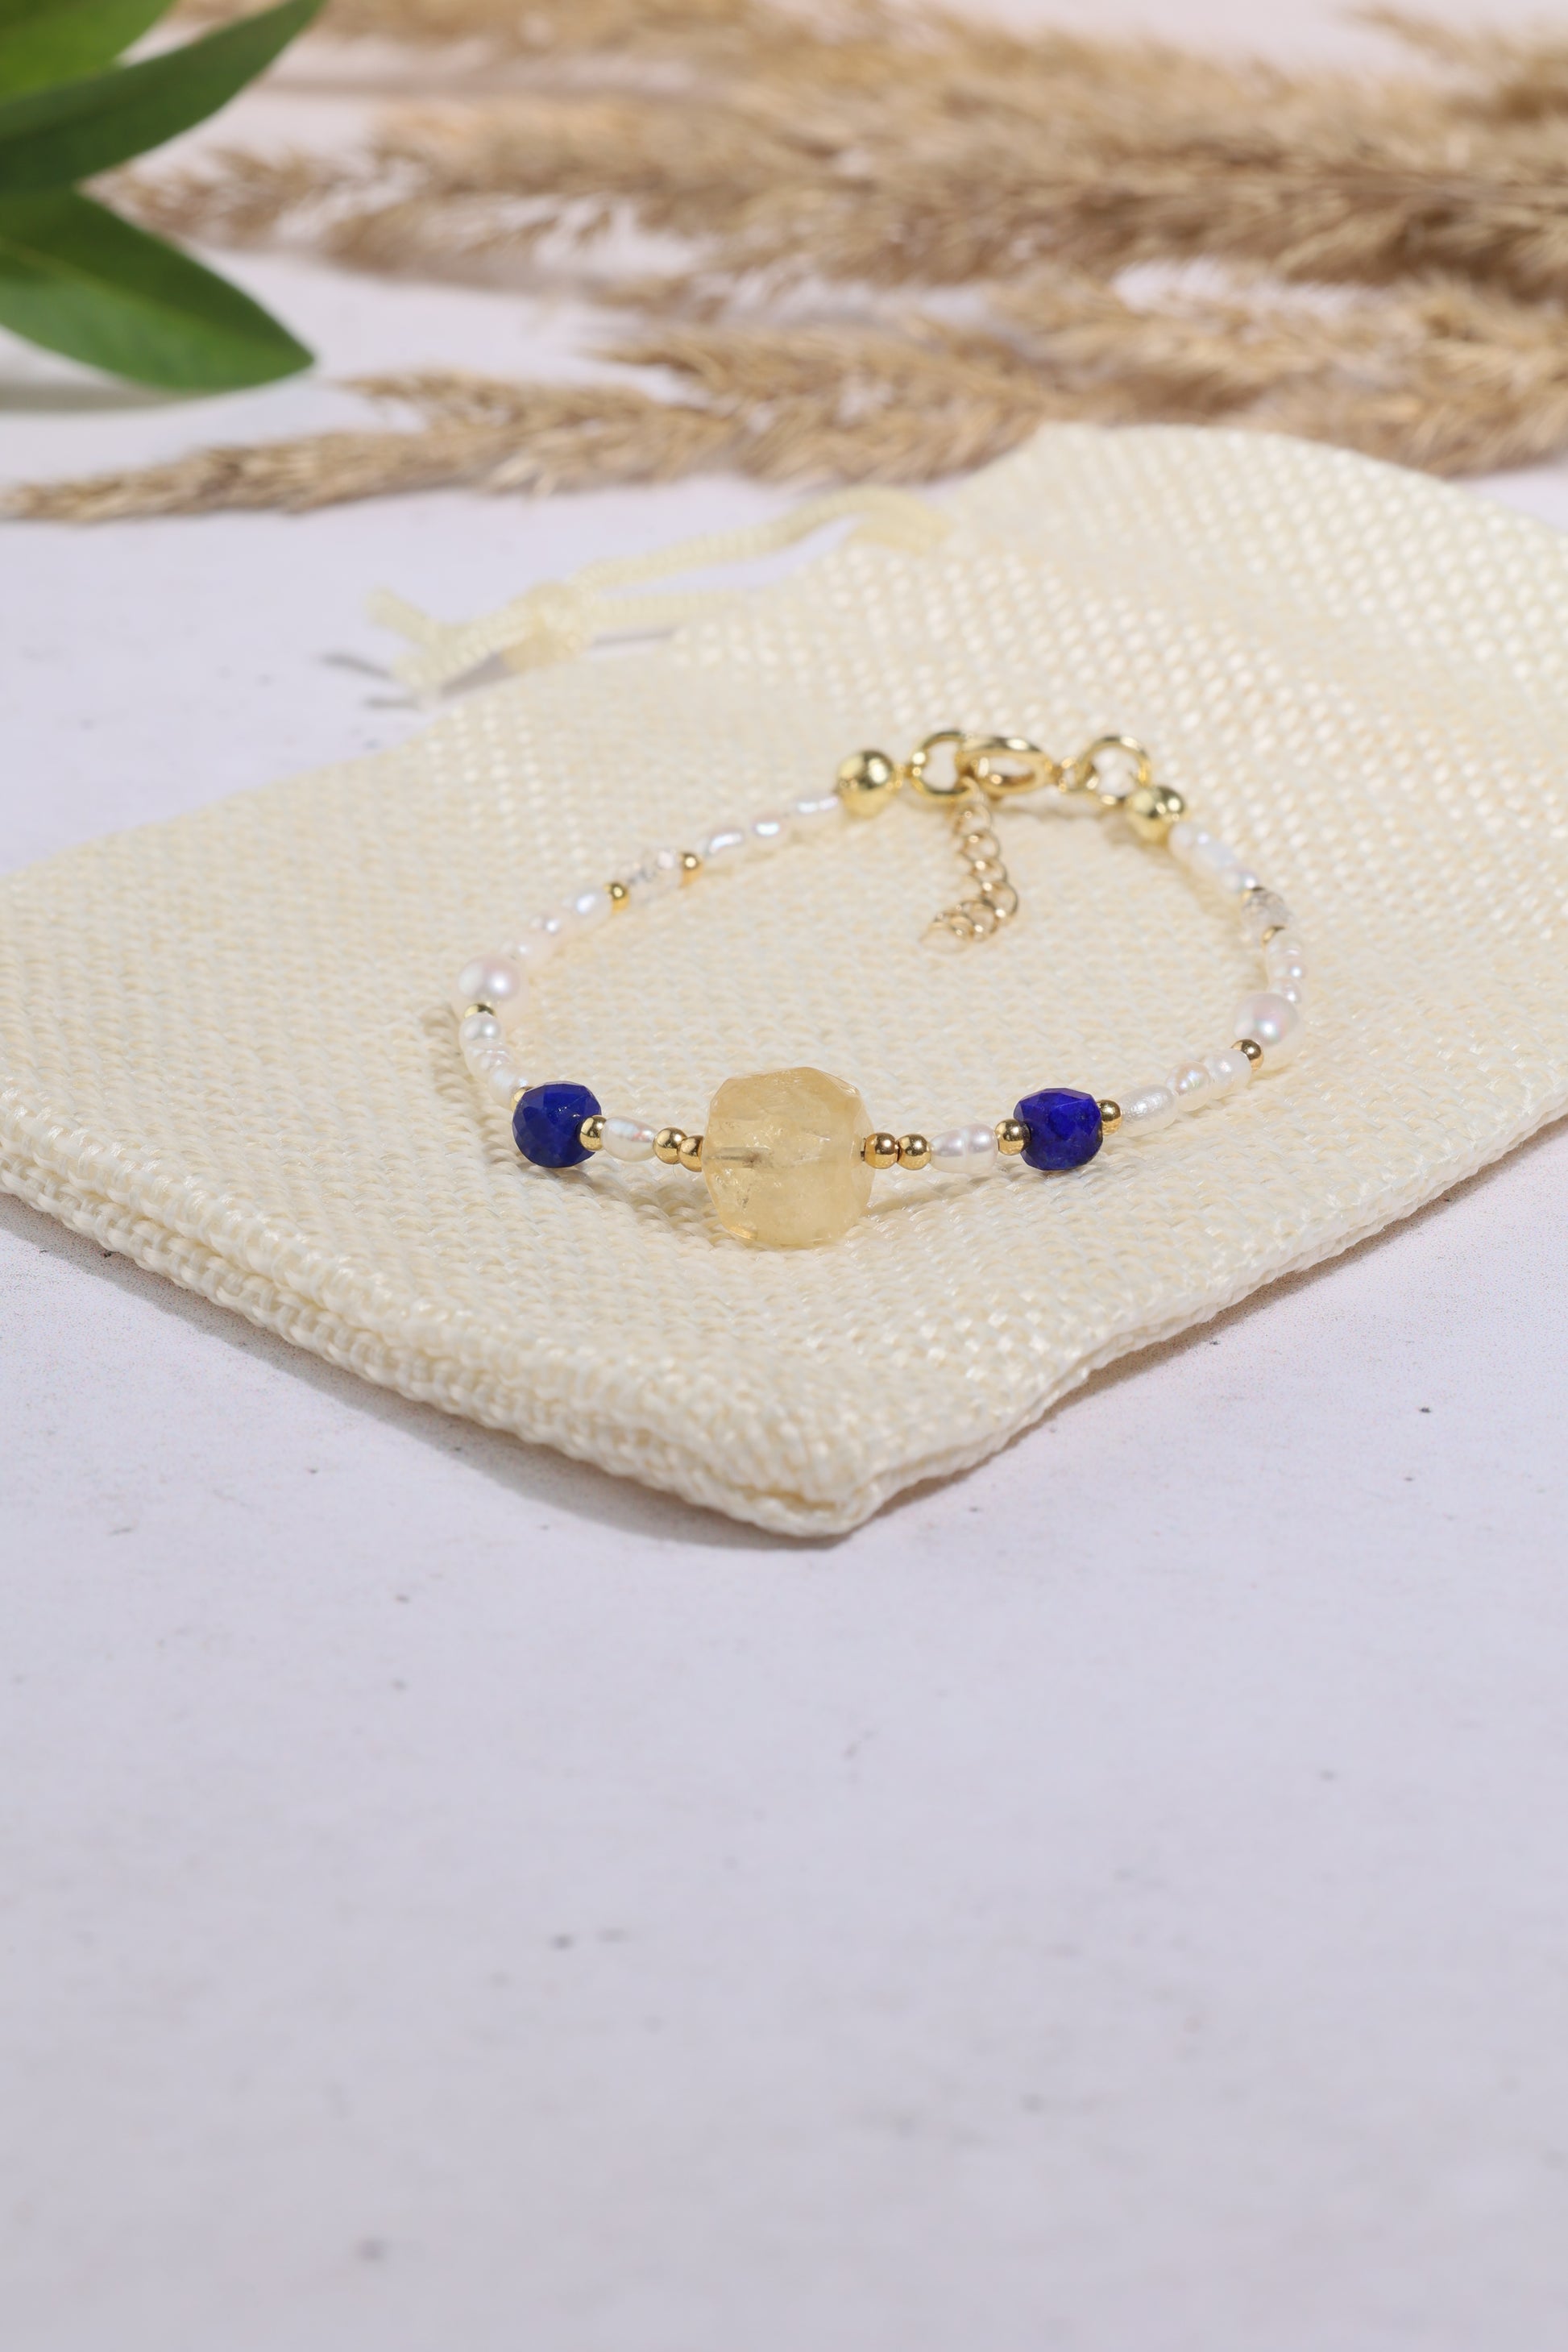 Bransoletka z kryształem górskim, cytrynem, lapis lazuli i perłami